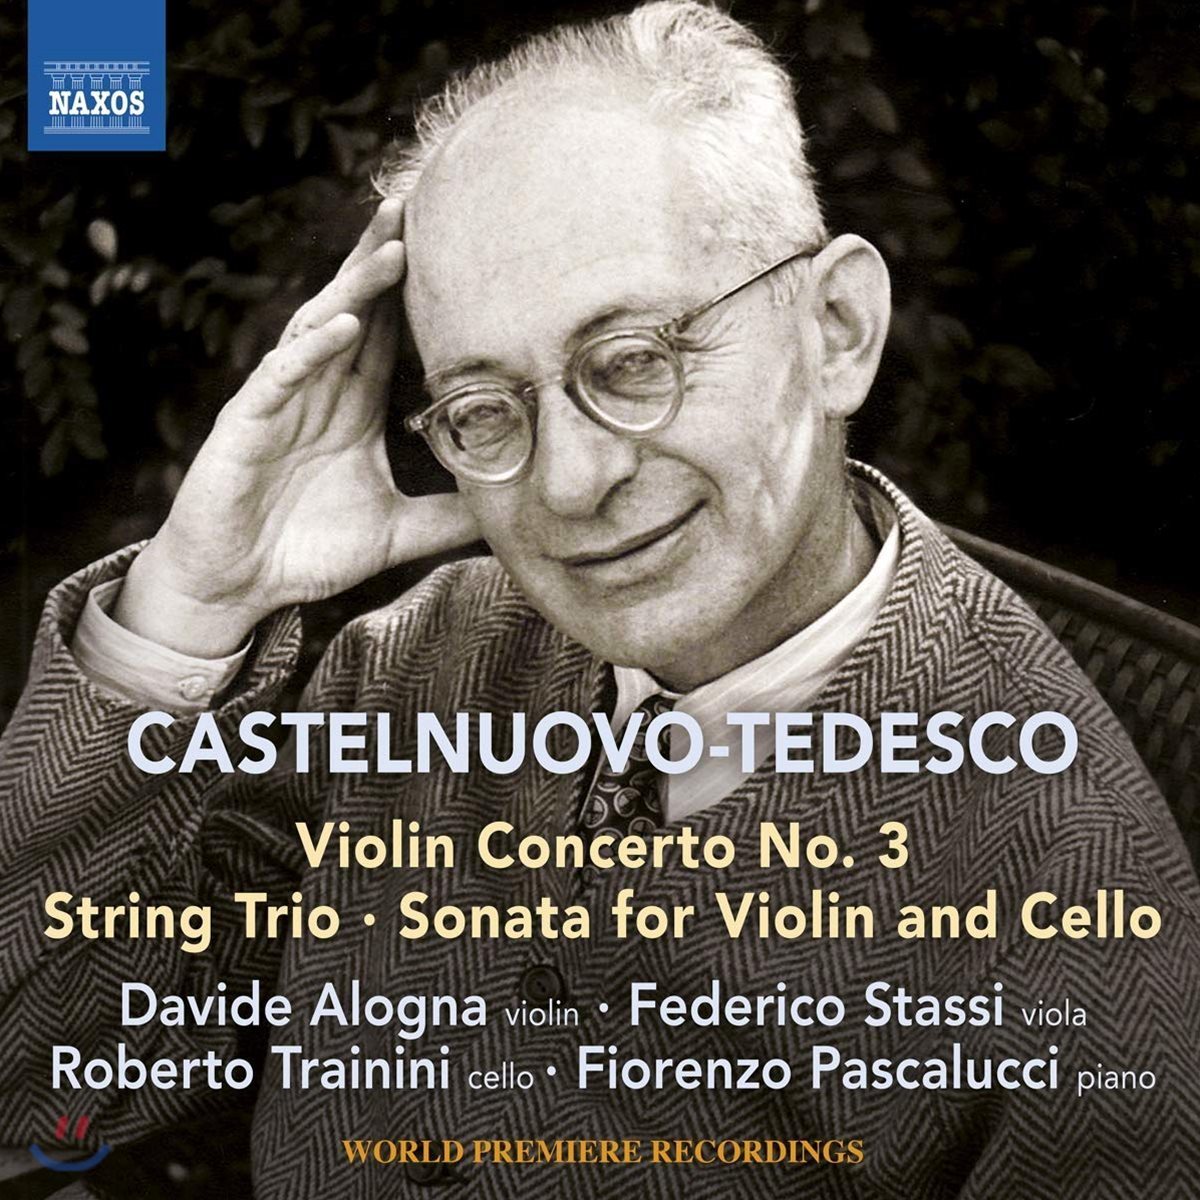 Davide Alogna 카스텔누오보-테데스코: 바이올린과 피아노를 위한 협주곡 3번, 현악 삼중주, 바이올린과 첼로를 위한 소나타